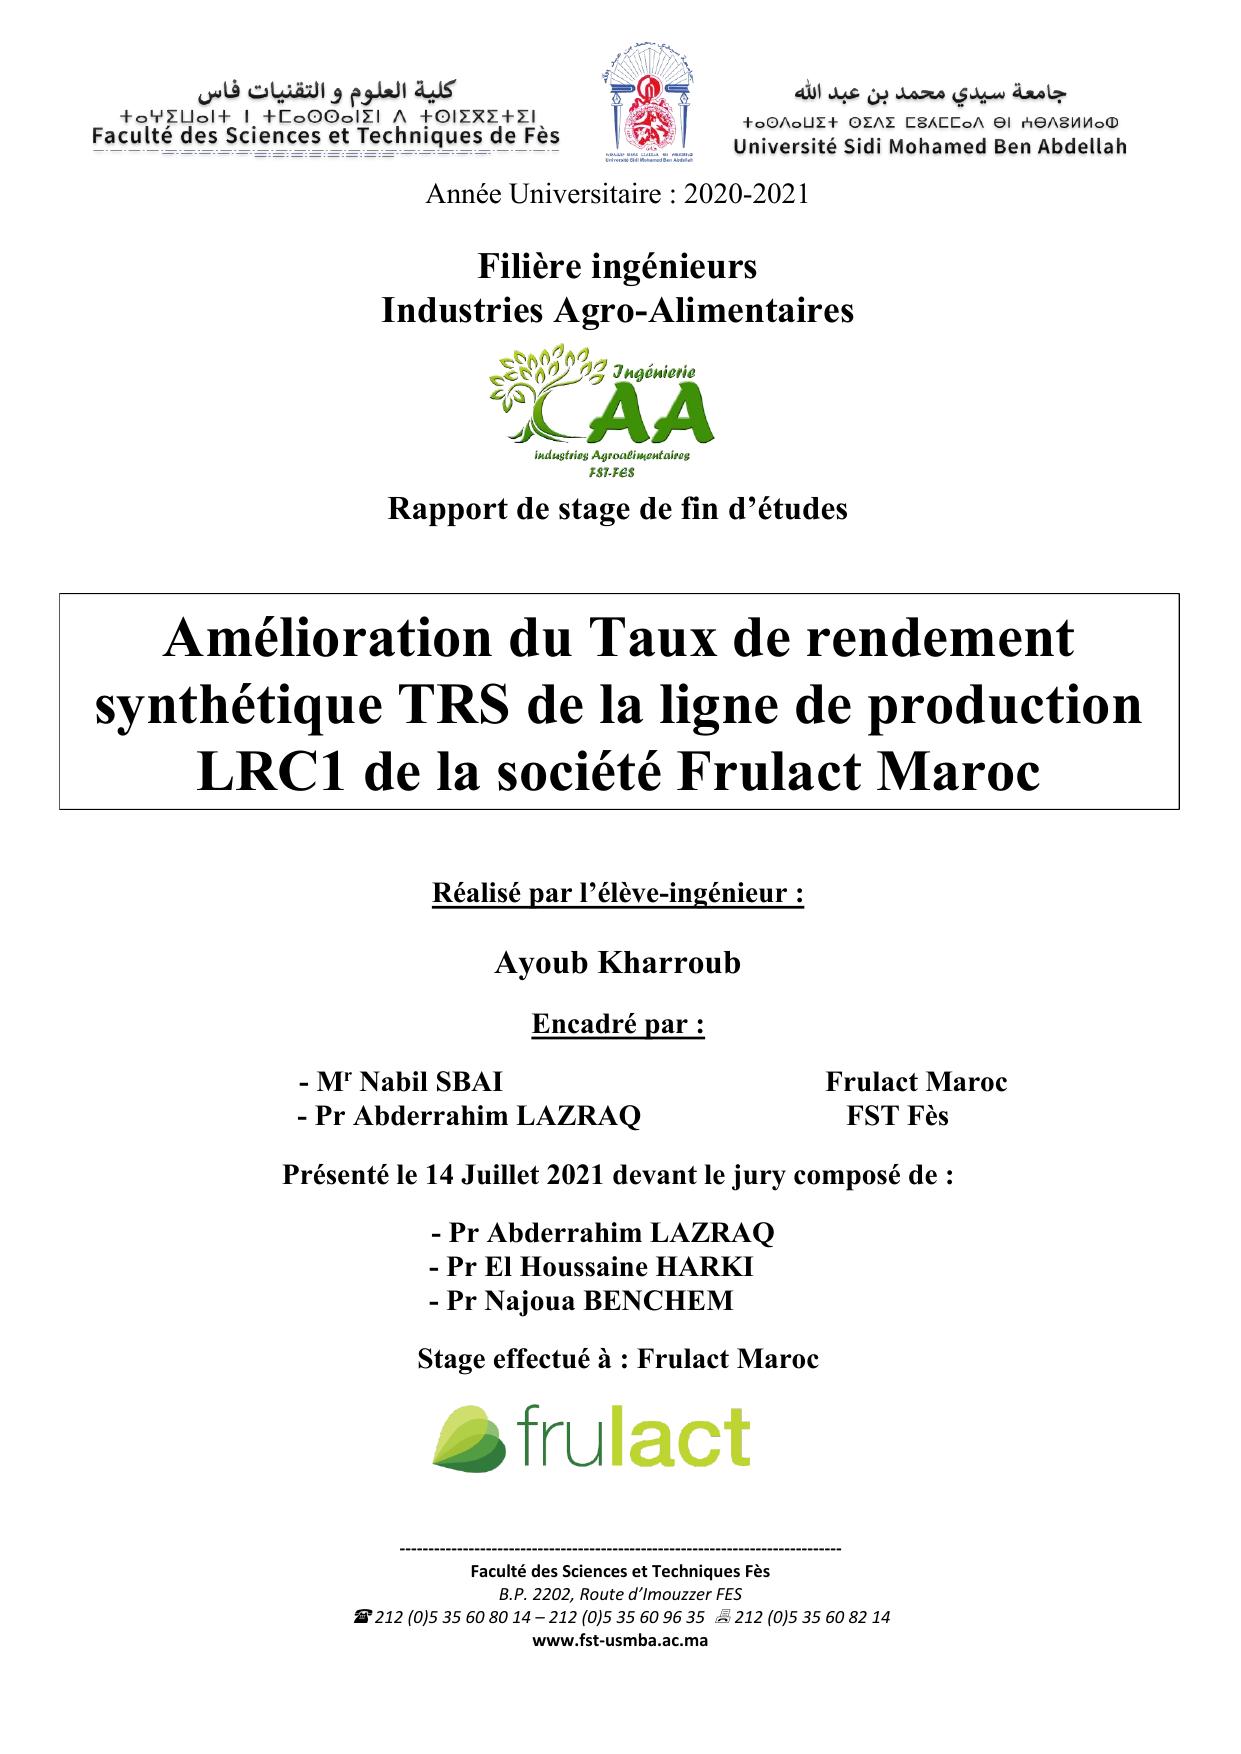 Amélioration du Taux de rendement synthétique TRS de la ligne de production LRC1 de la société Frulact Maroc